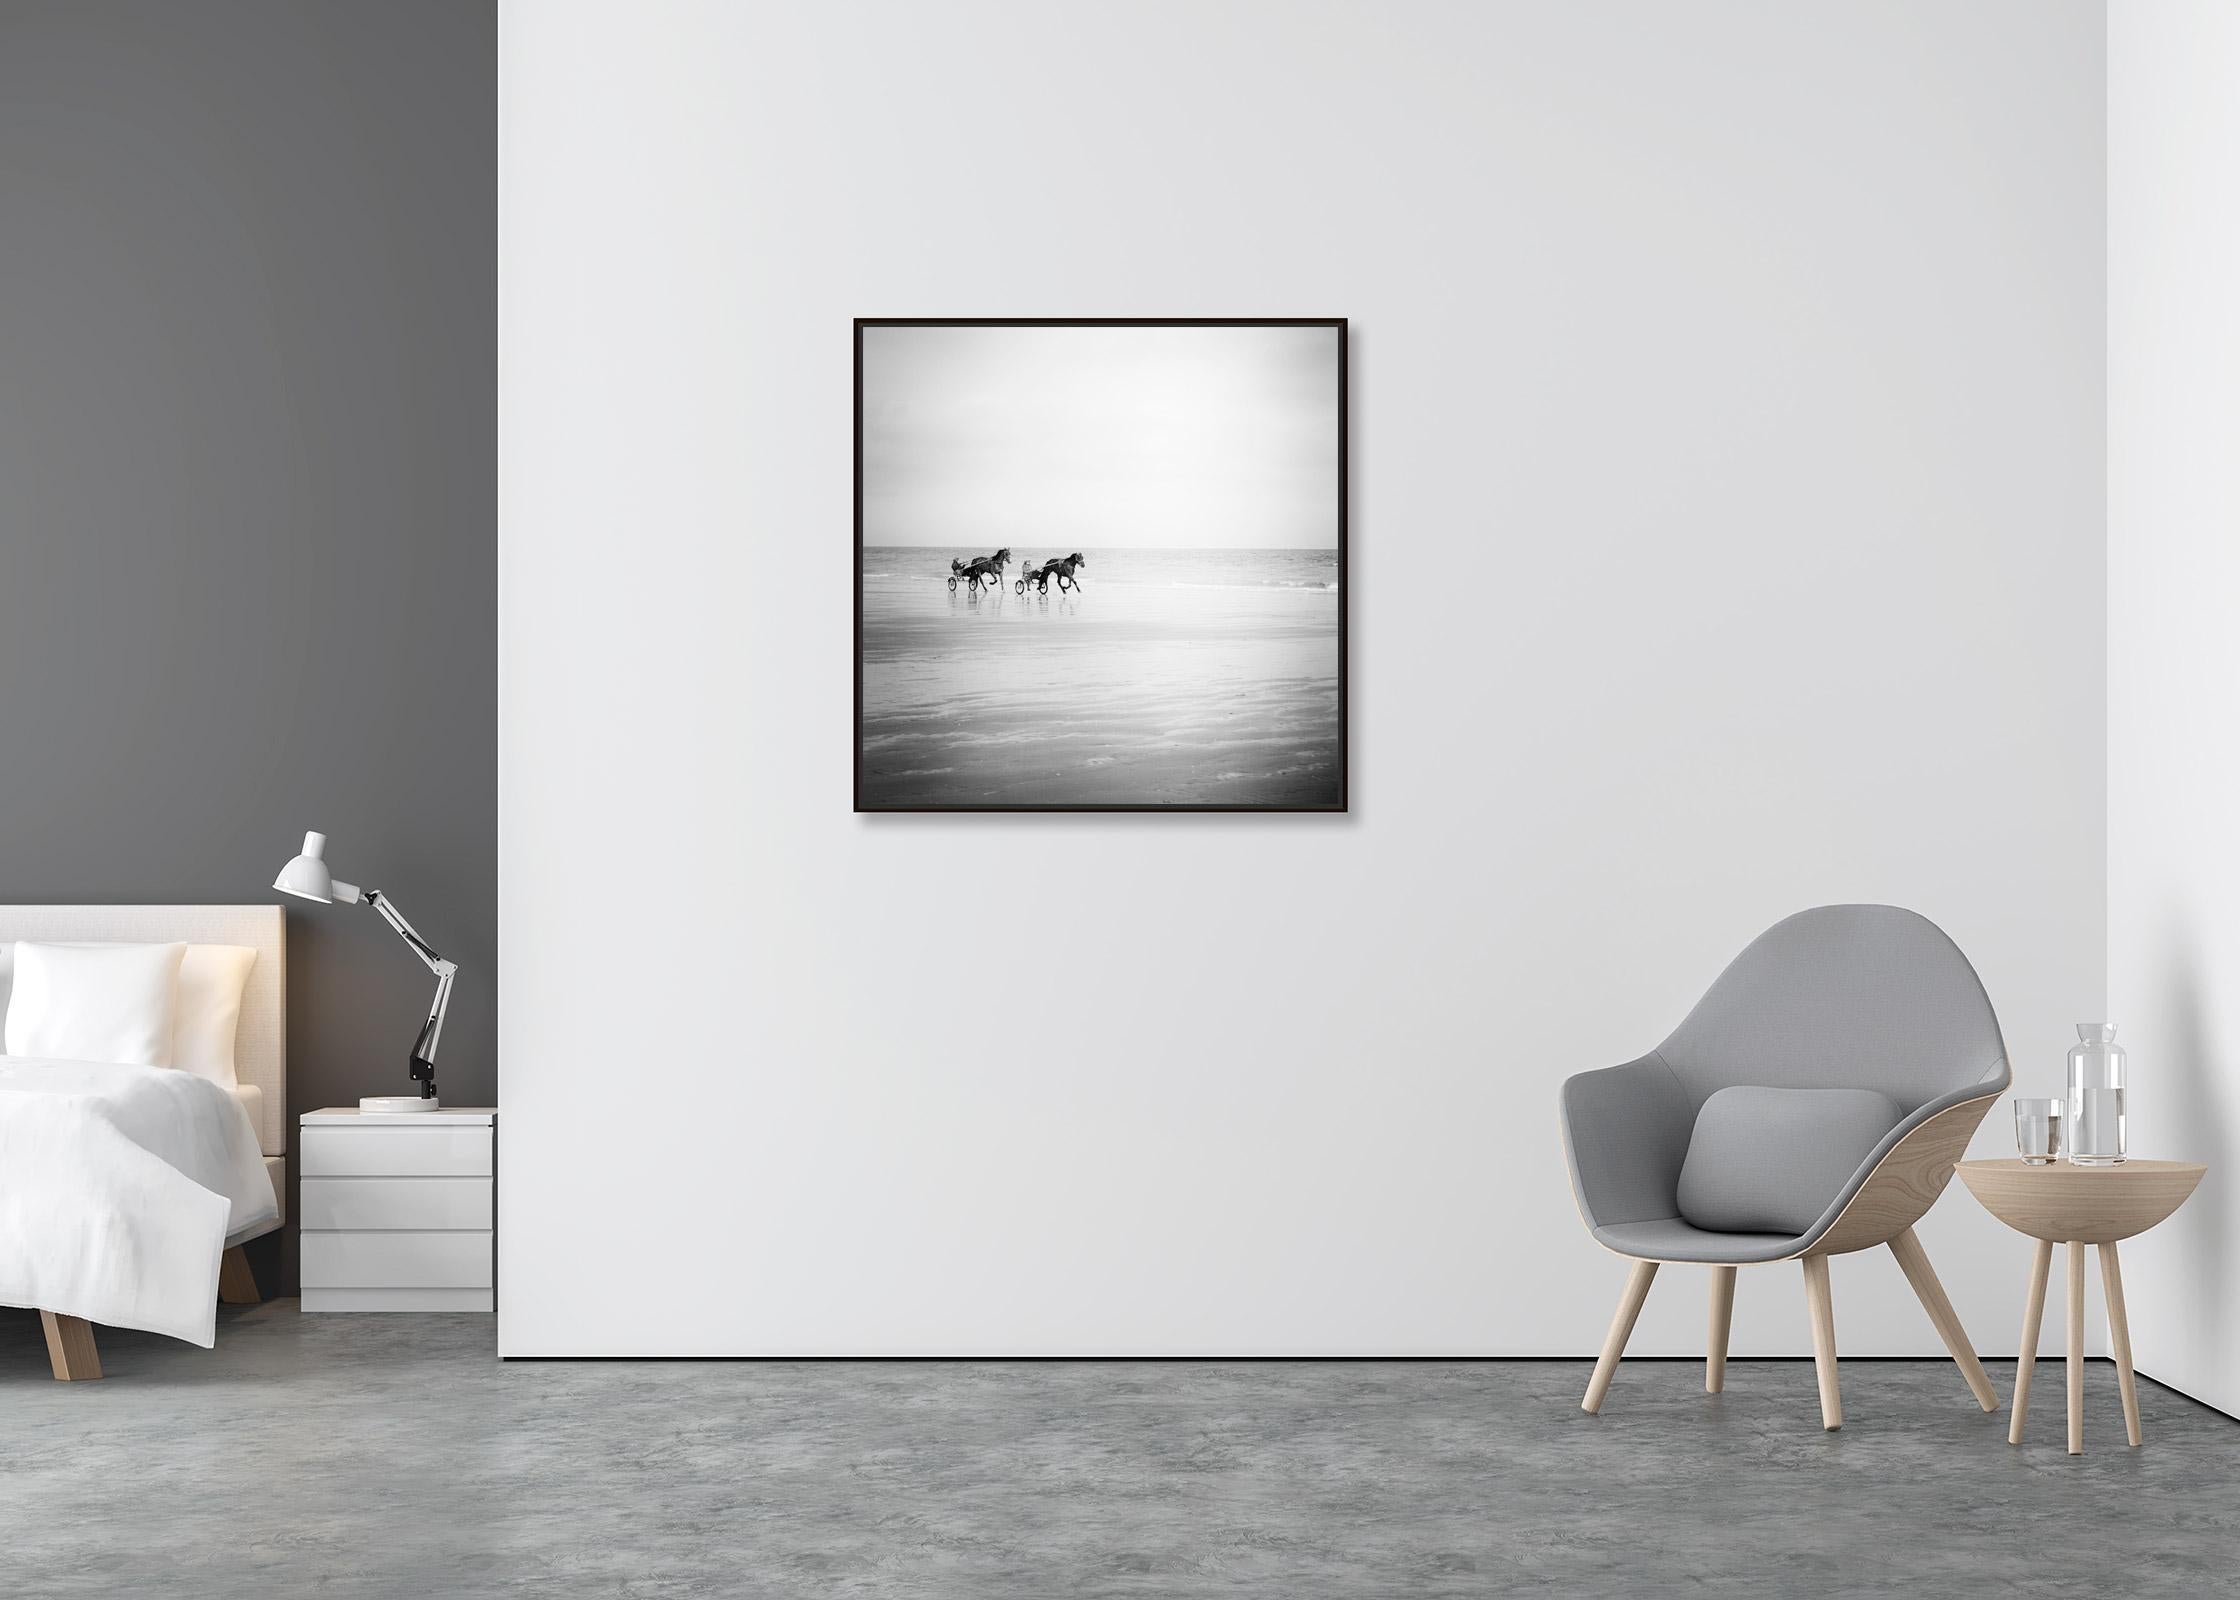 Harness Racing, Pferde am Strand, Frankreich, Schwarz-Weiß-Landschaftsfotografie (Zeitgenössisch), Photograph, von Gerald Berghammer